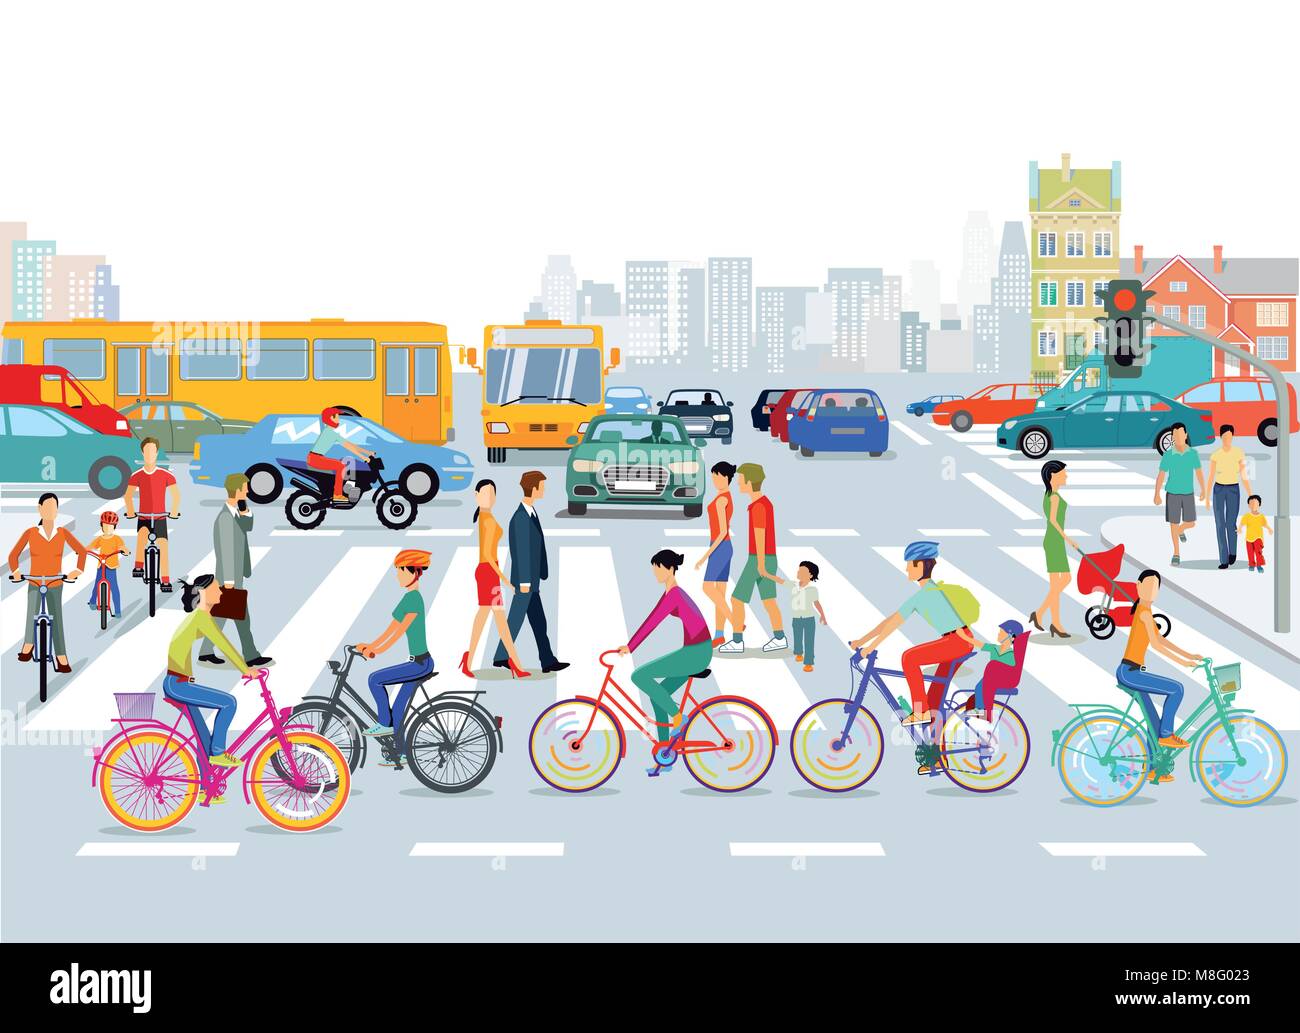 Stadt mit Verkehr, Radfahrer und Fußgänger, Abbildung Stock Vektor